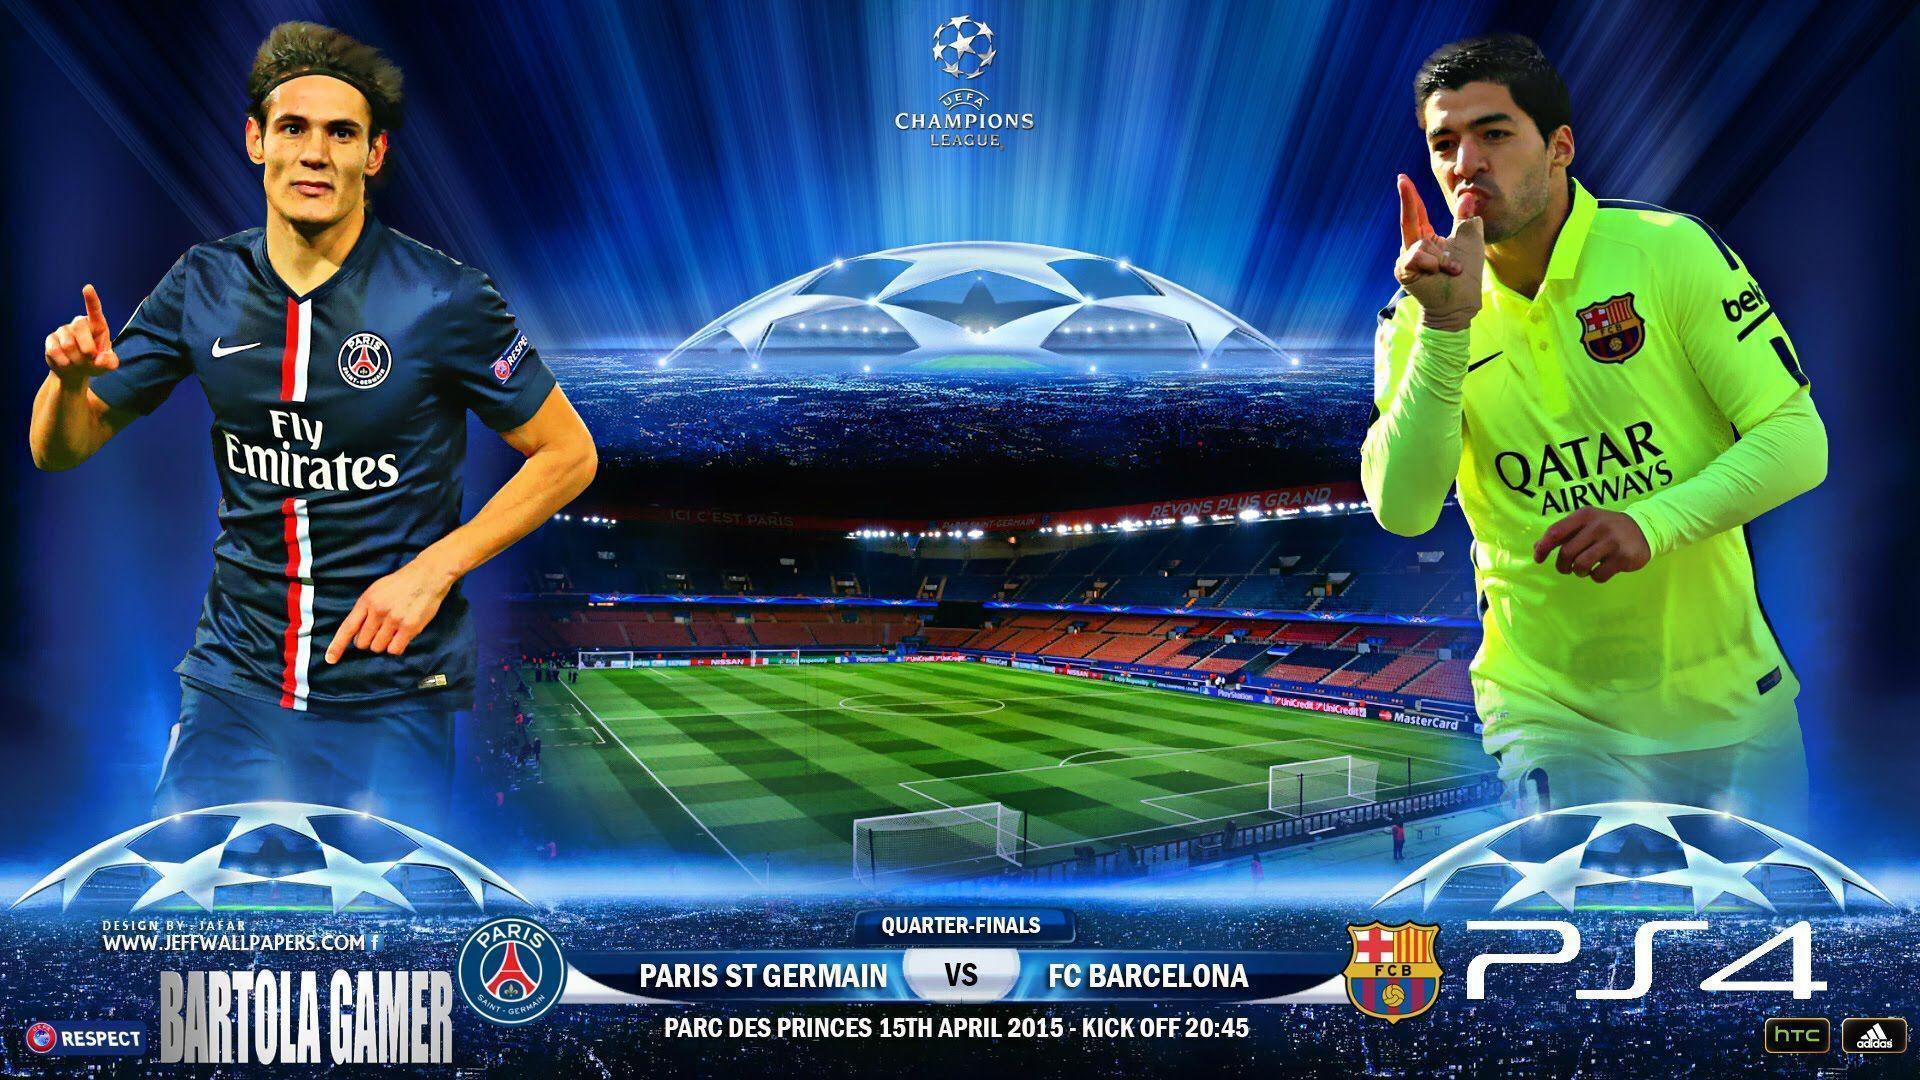 UEFA Champions League Quarter Finals: Paris Saint Germain Vs FC